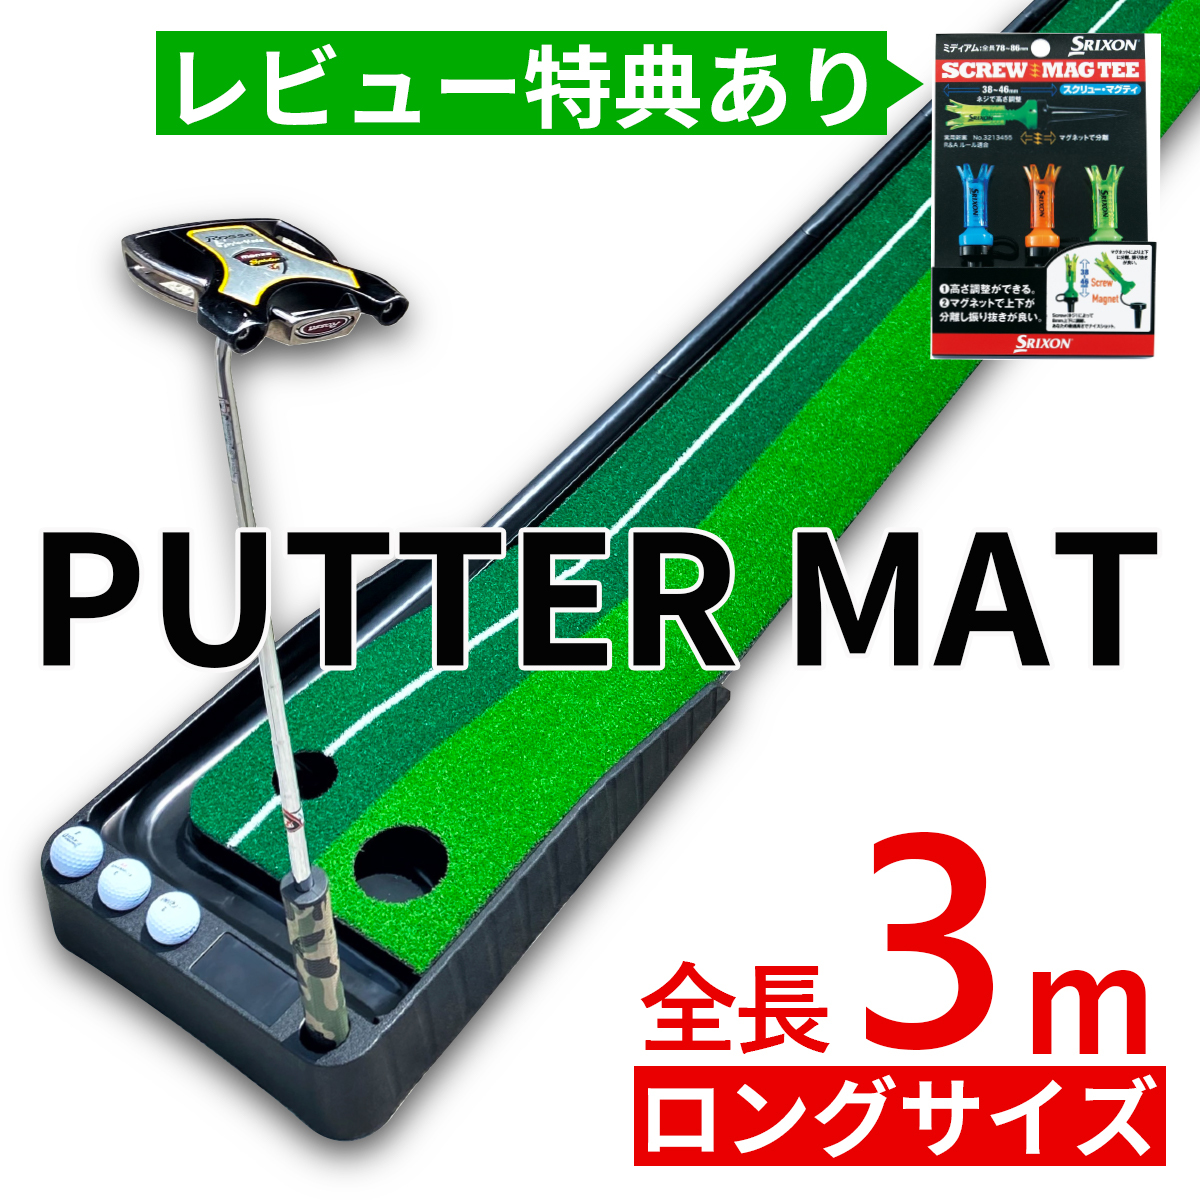 パター マット 3m パター 練習 器具 パター練習マット パターマット 機能付き アプローチ パッティング パット パター 大型 練習用具  パター練習 ゴルフ